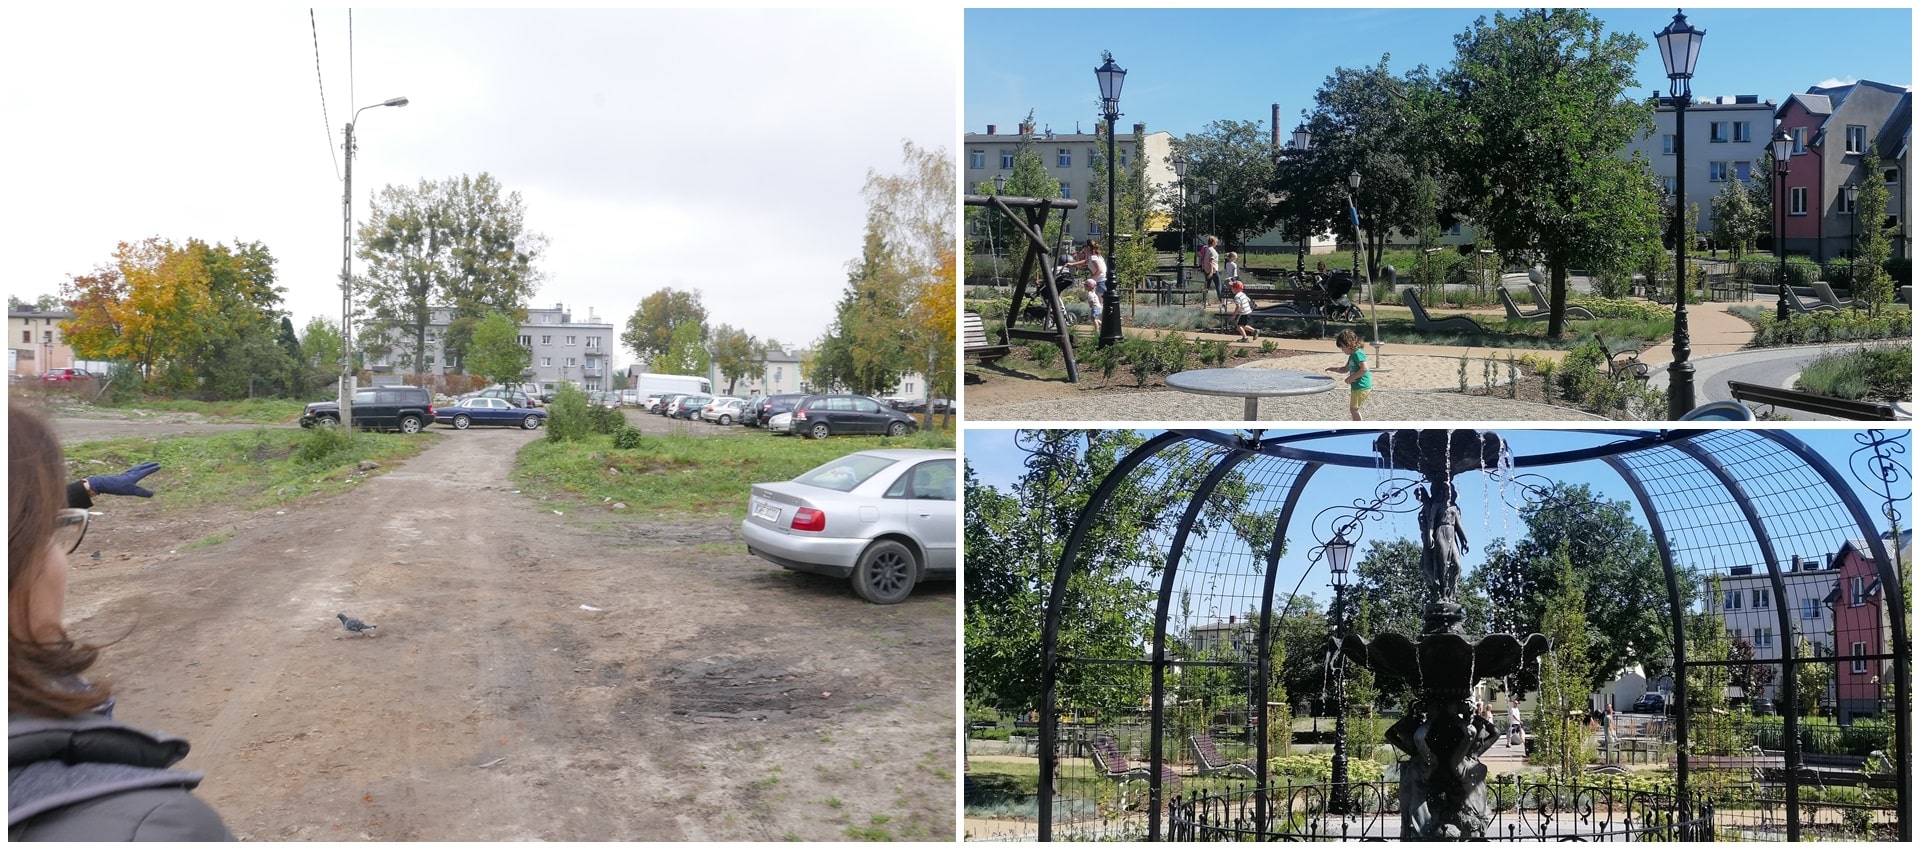 Trzy połączone zdjęcia: jedno przedstawia nieutwardzony parking, drugie zagospodarowany park, trzecie fontanne